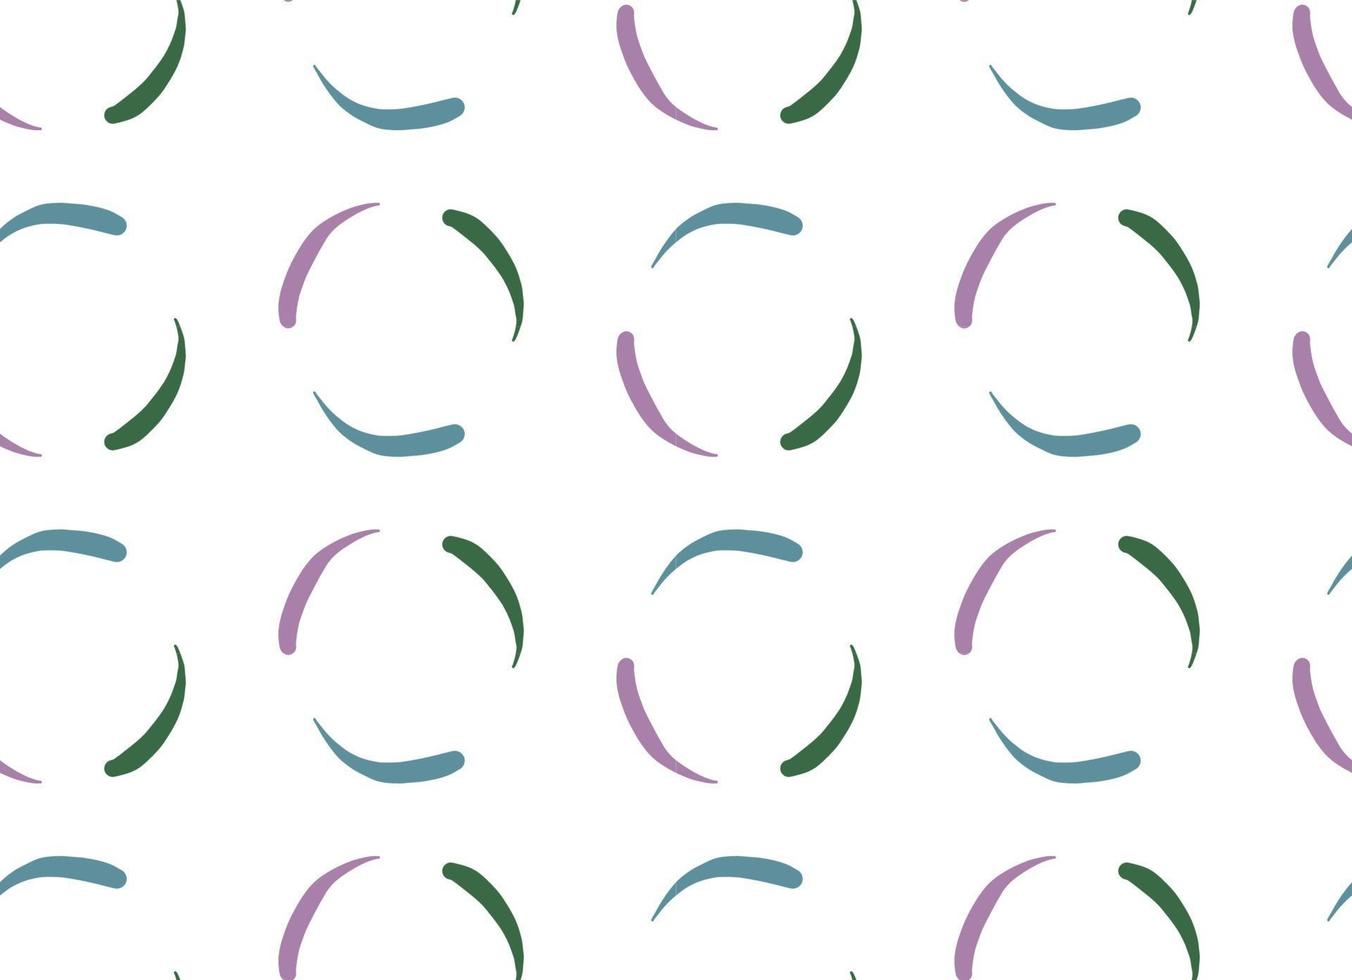 Vektor Textur Hintergrund, nahtloses Muster. handgezeichnete, weiße, lila, grüne, blaue Farben.